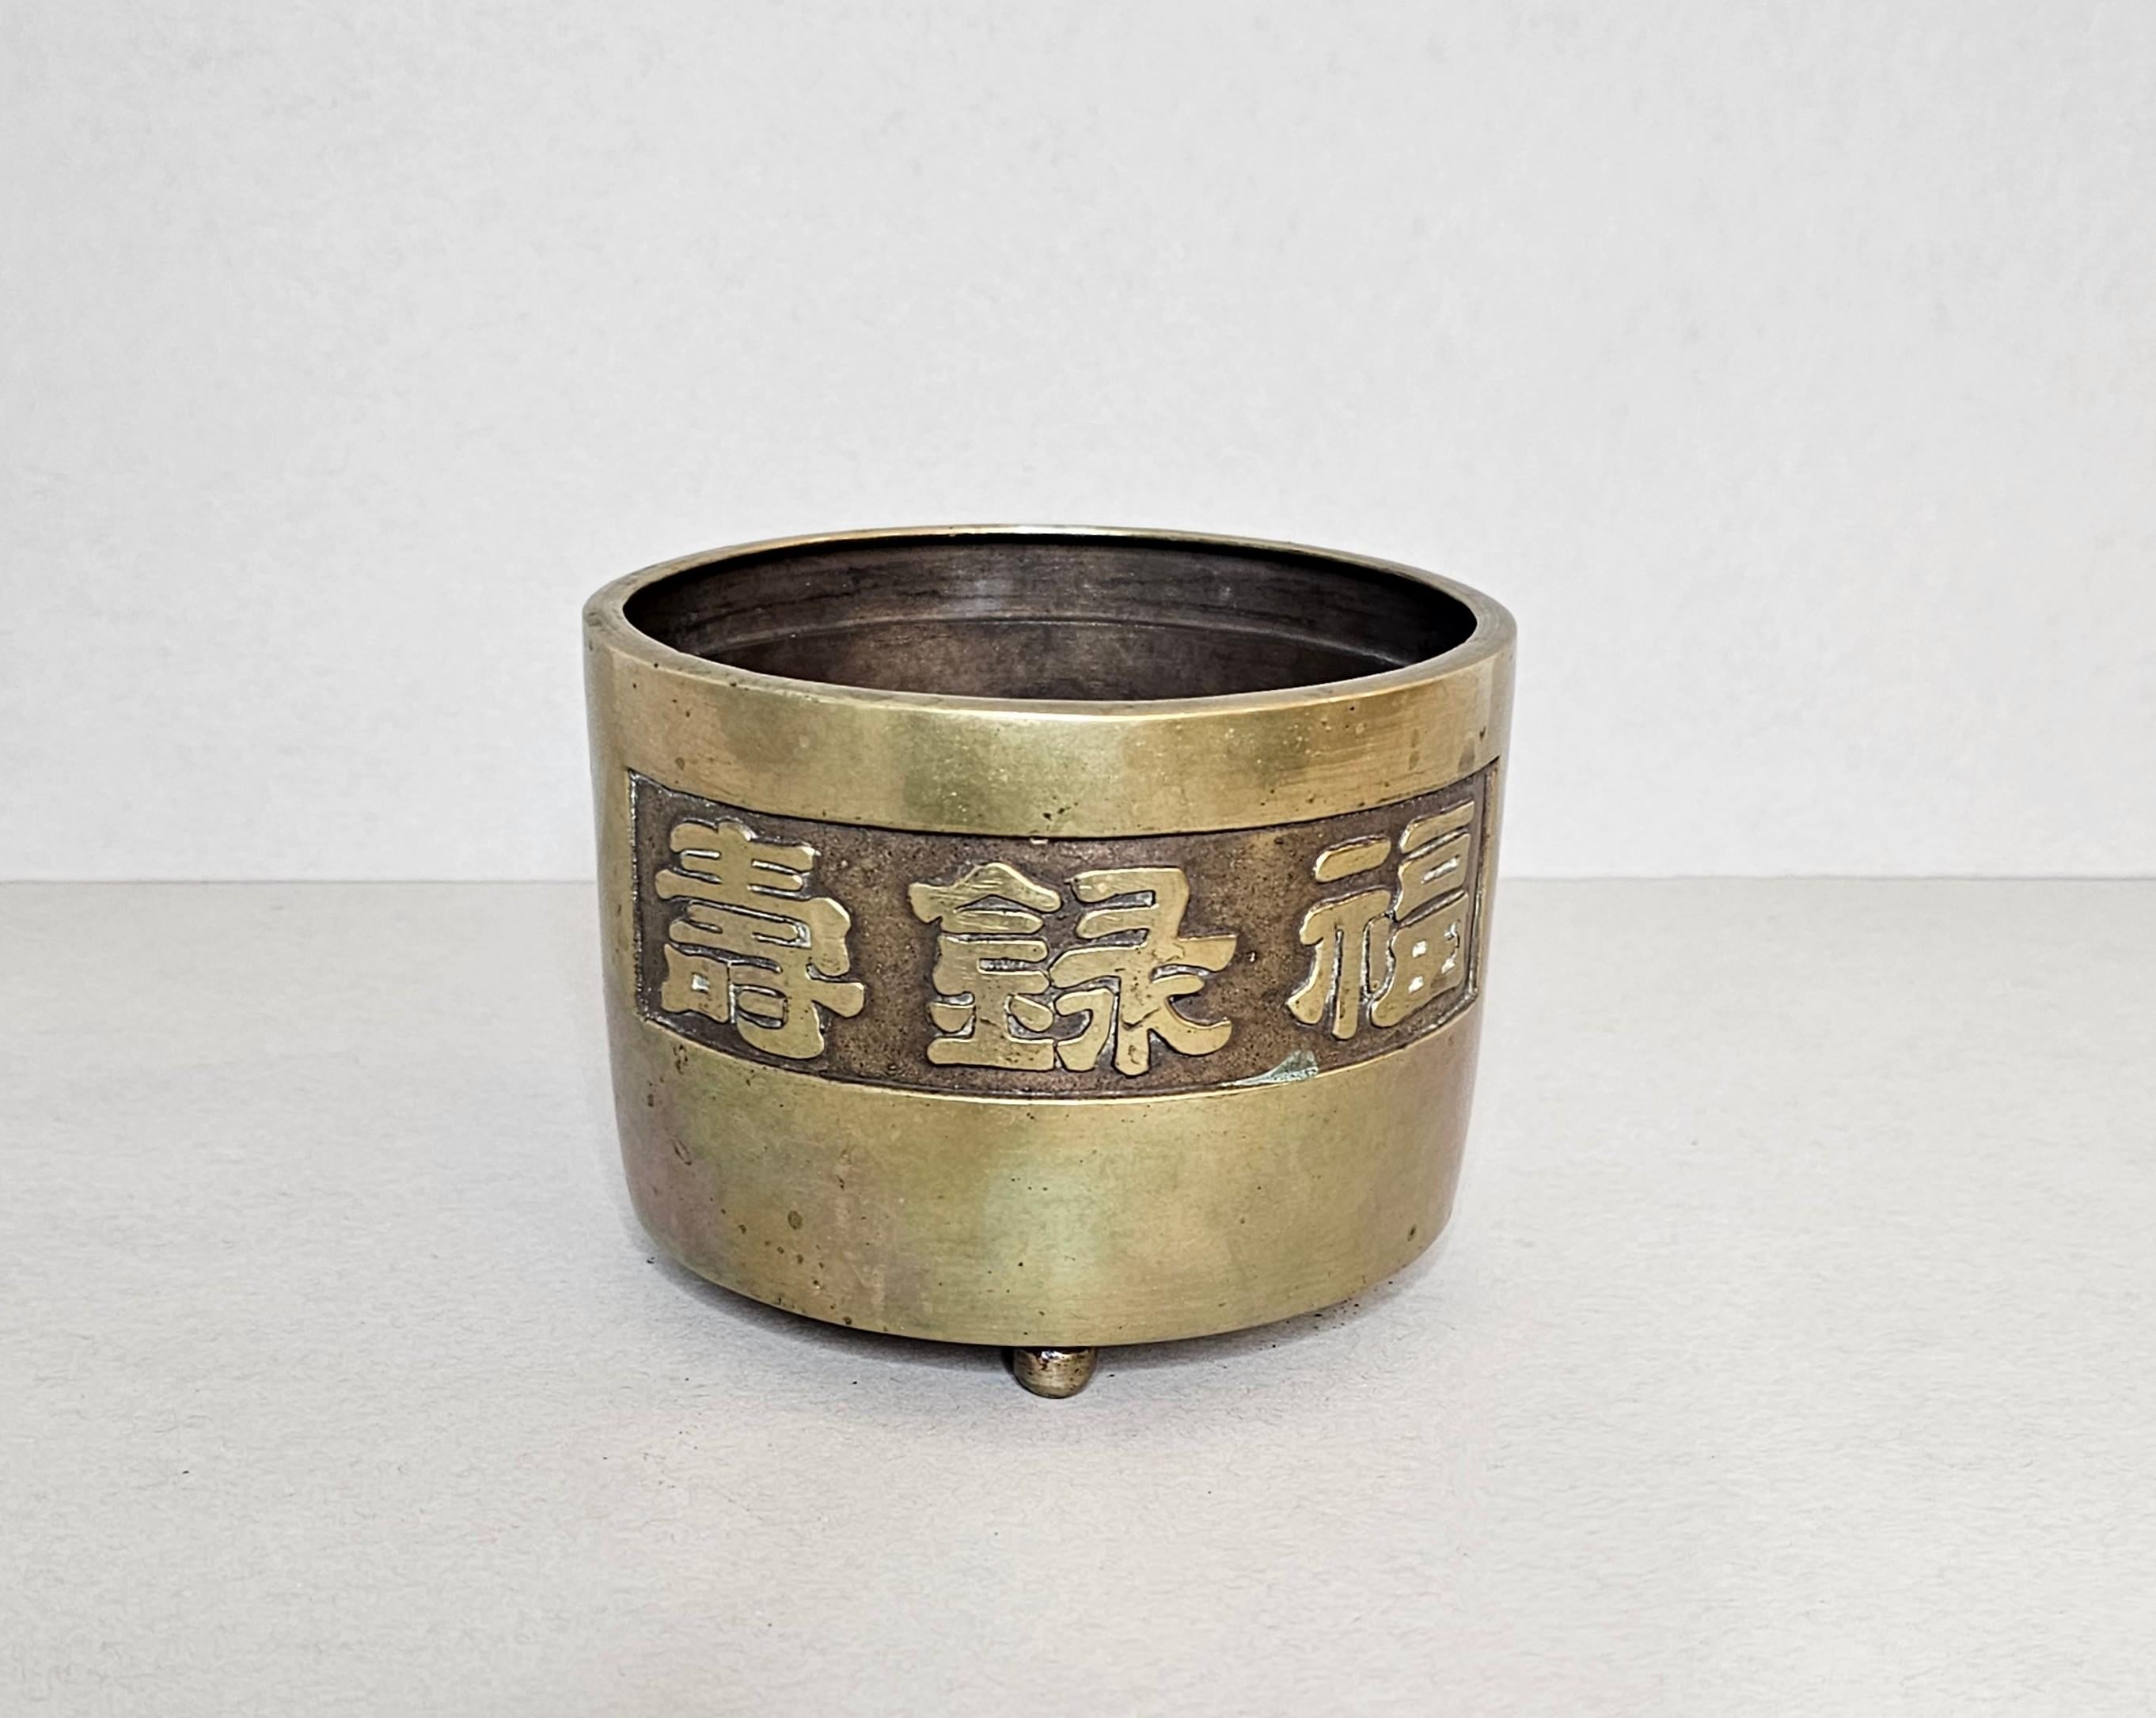 Encensoir en bronze chinois de haute qualité de la dynastie Qing (1636-1912) (aujourd'hui utilisé comme brûleur d'encens - cache-pot - boîte de table décorative) encerclé de caractères traditionnels, reposant sur trois pieds boules, joliment patiné.